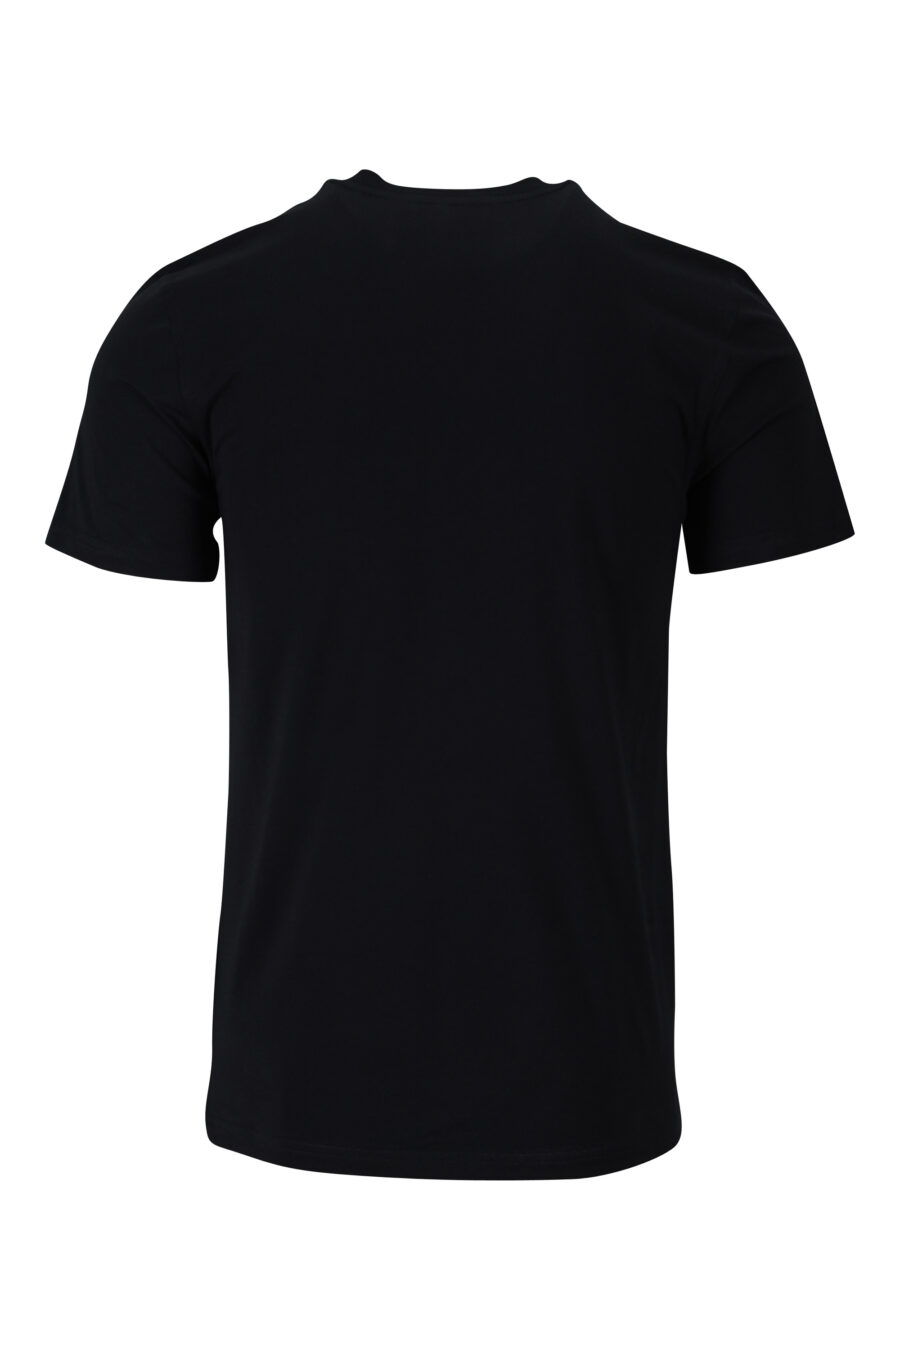 T-shirt preta em algodão ecológico com mini-logotipo "teddy" - 889316853124 1